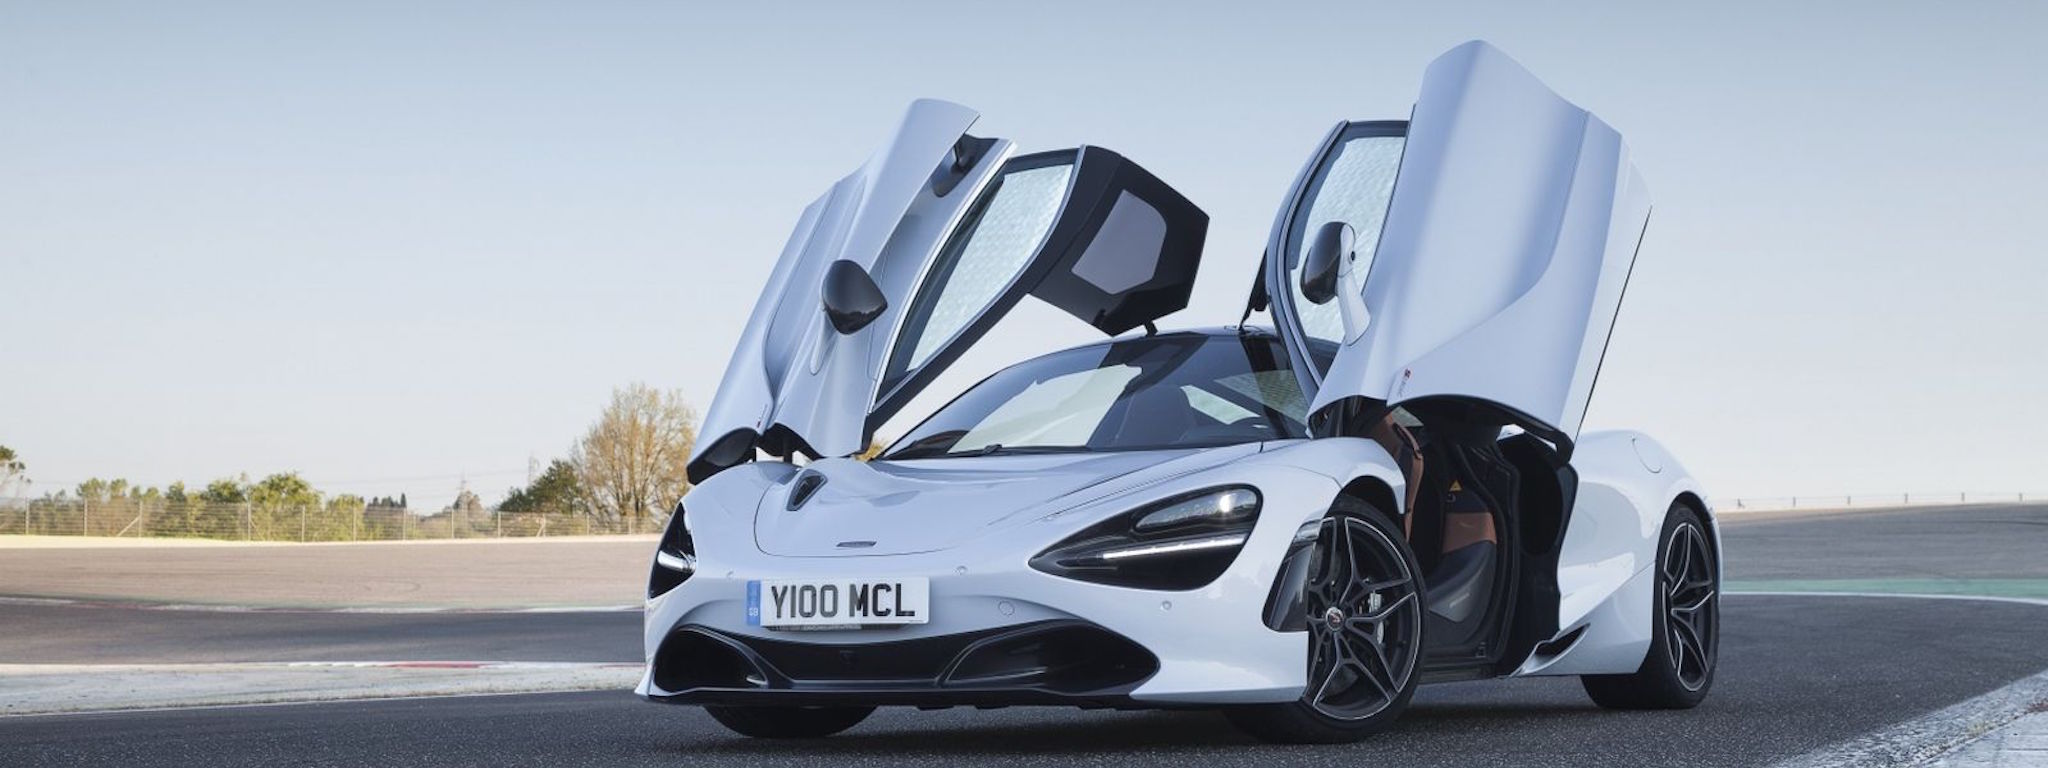 [Hình ảnh] McLaren 720S – khung sườn các-bon, động cơ V8 4.0L, 710 mã lực, 0-100 km/h dưới 3 giây